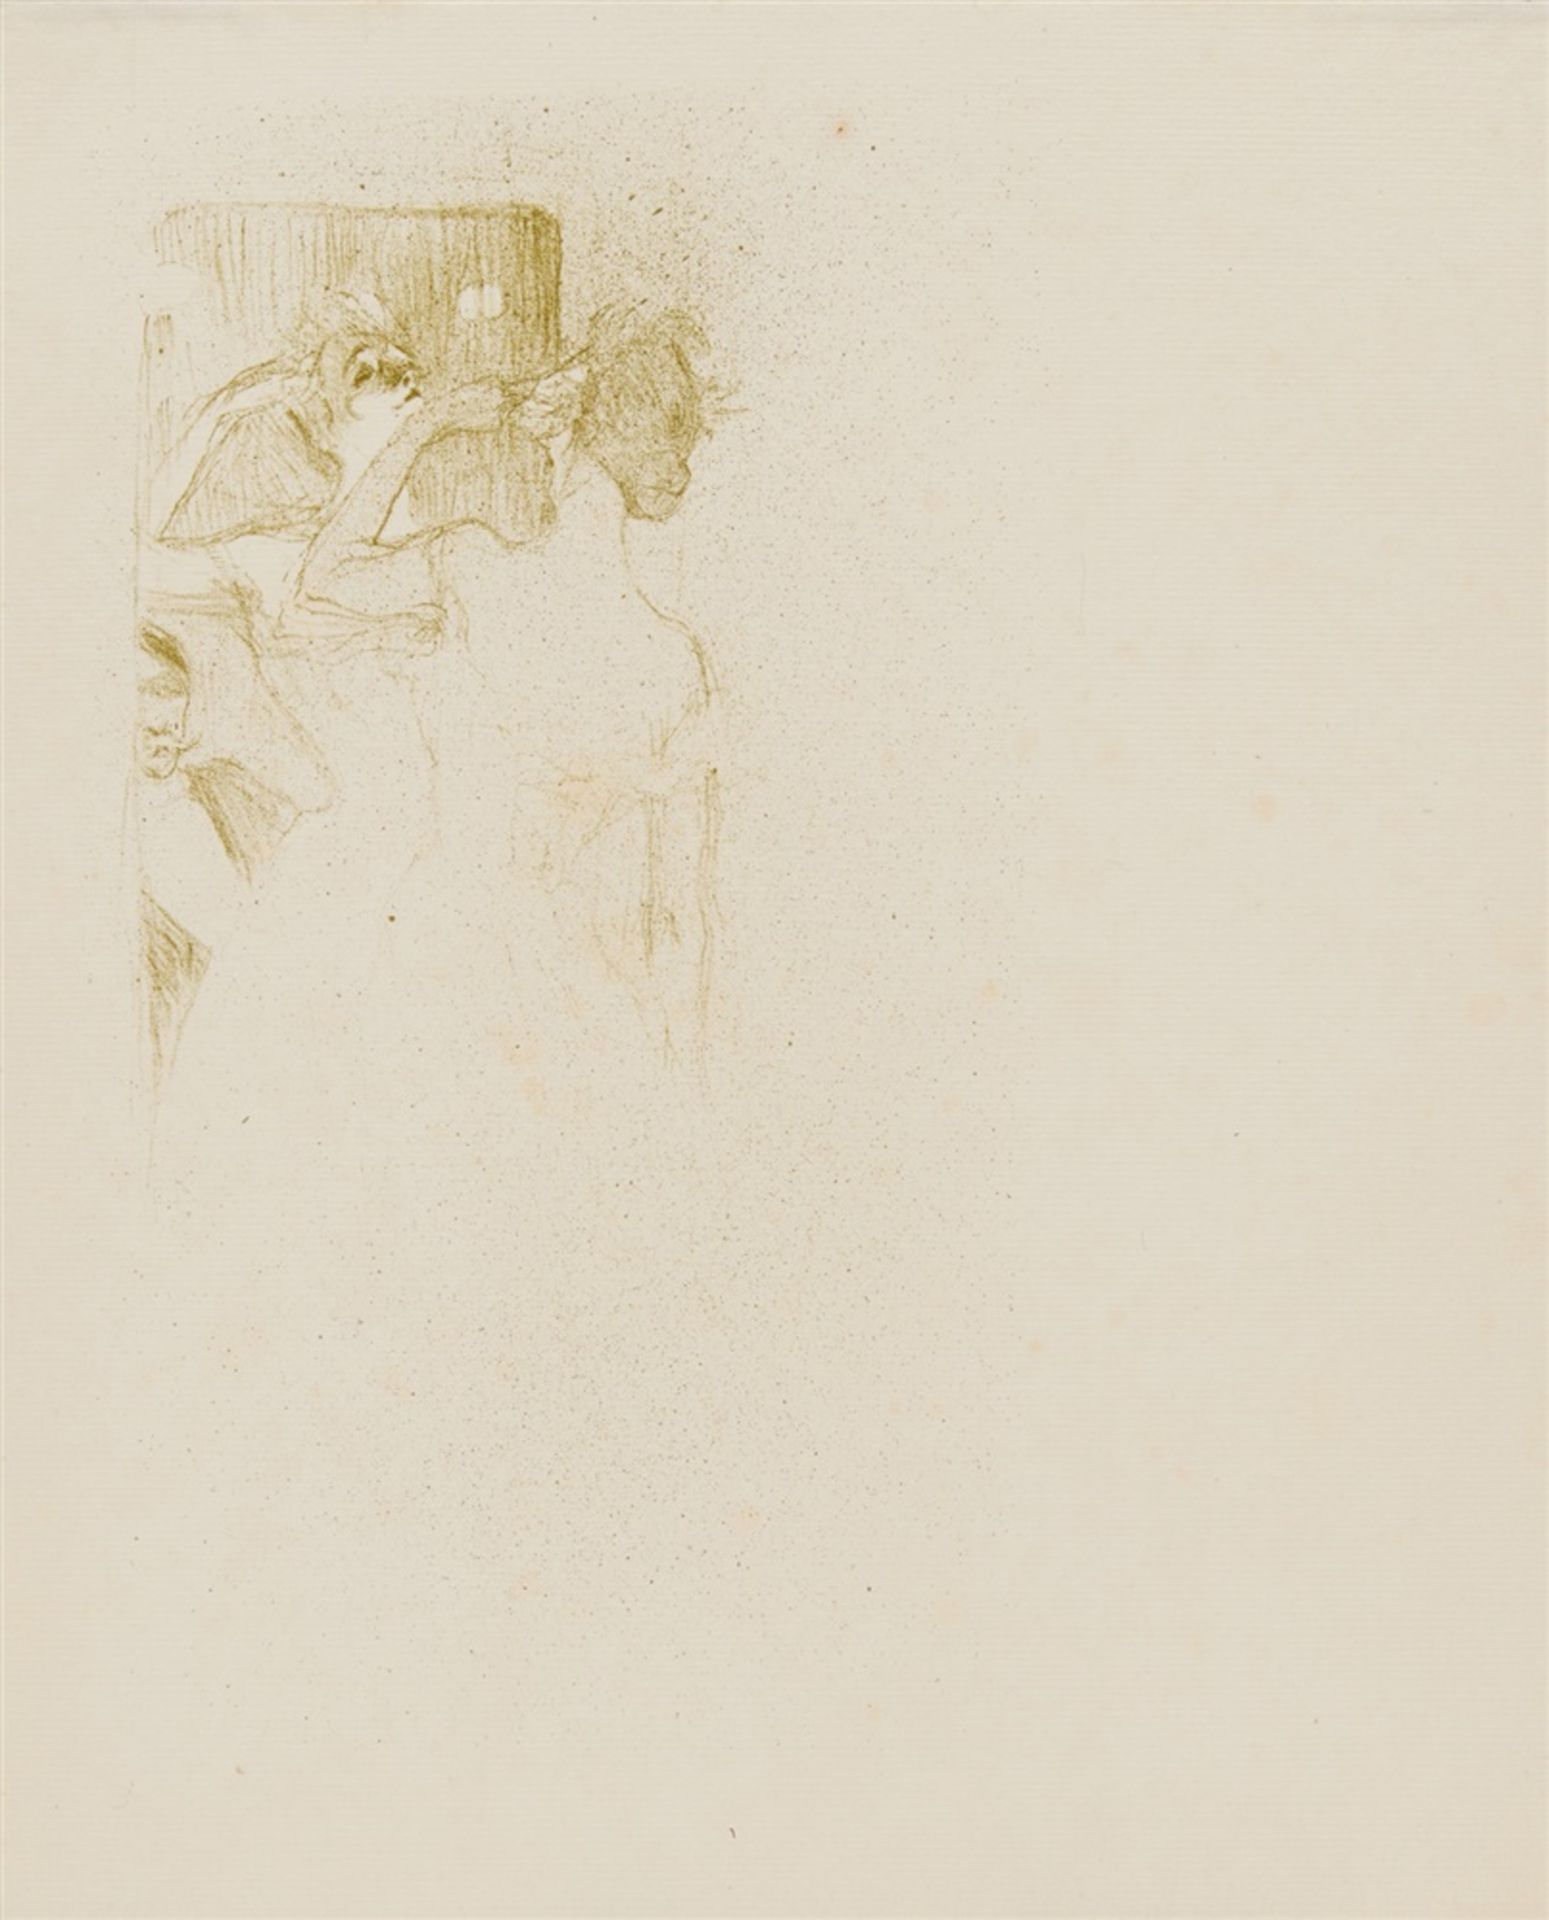 HENRI DE TOULOUSE-LAUTRECAlbi 1864 - 1901 Saint-André-du-Bois Yvette Guilbert. 1894Lithographie au